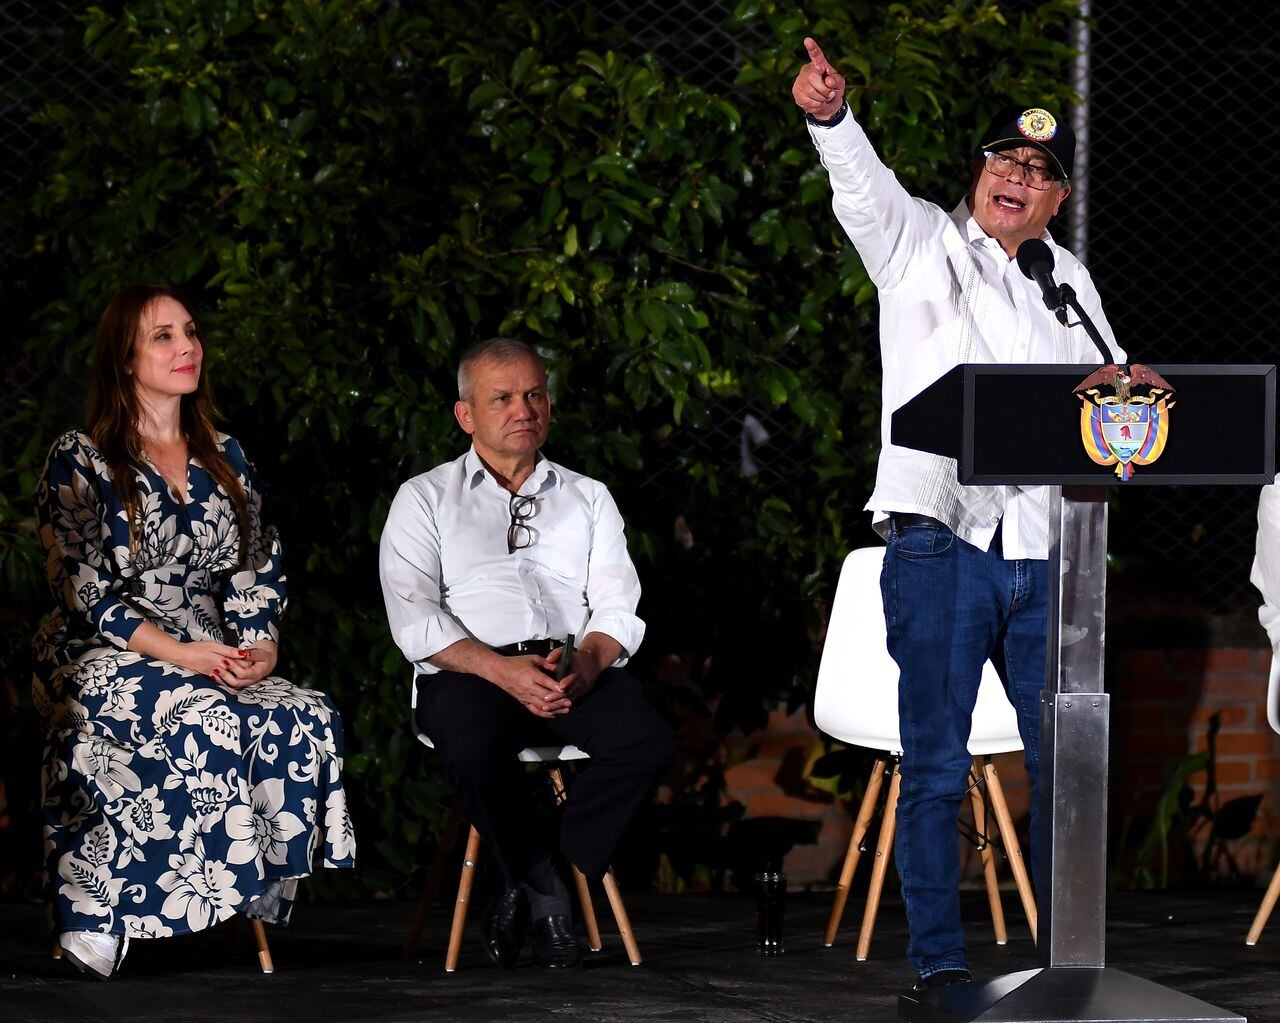 El presidemte de Colombia Gustavo Petro, visito a Cali a la inauguración del Bulevar del Oriente en el distrito de Aguabanca.